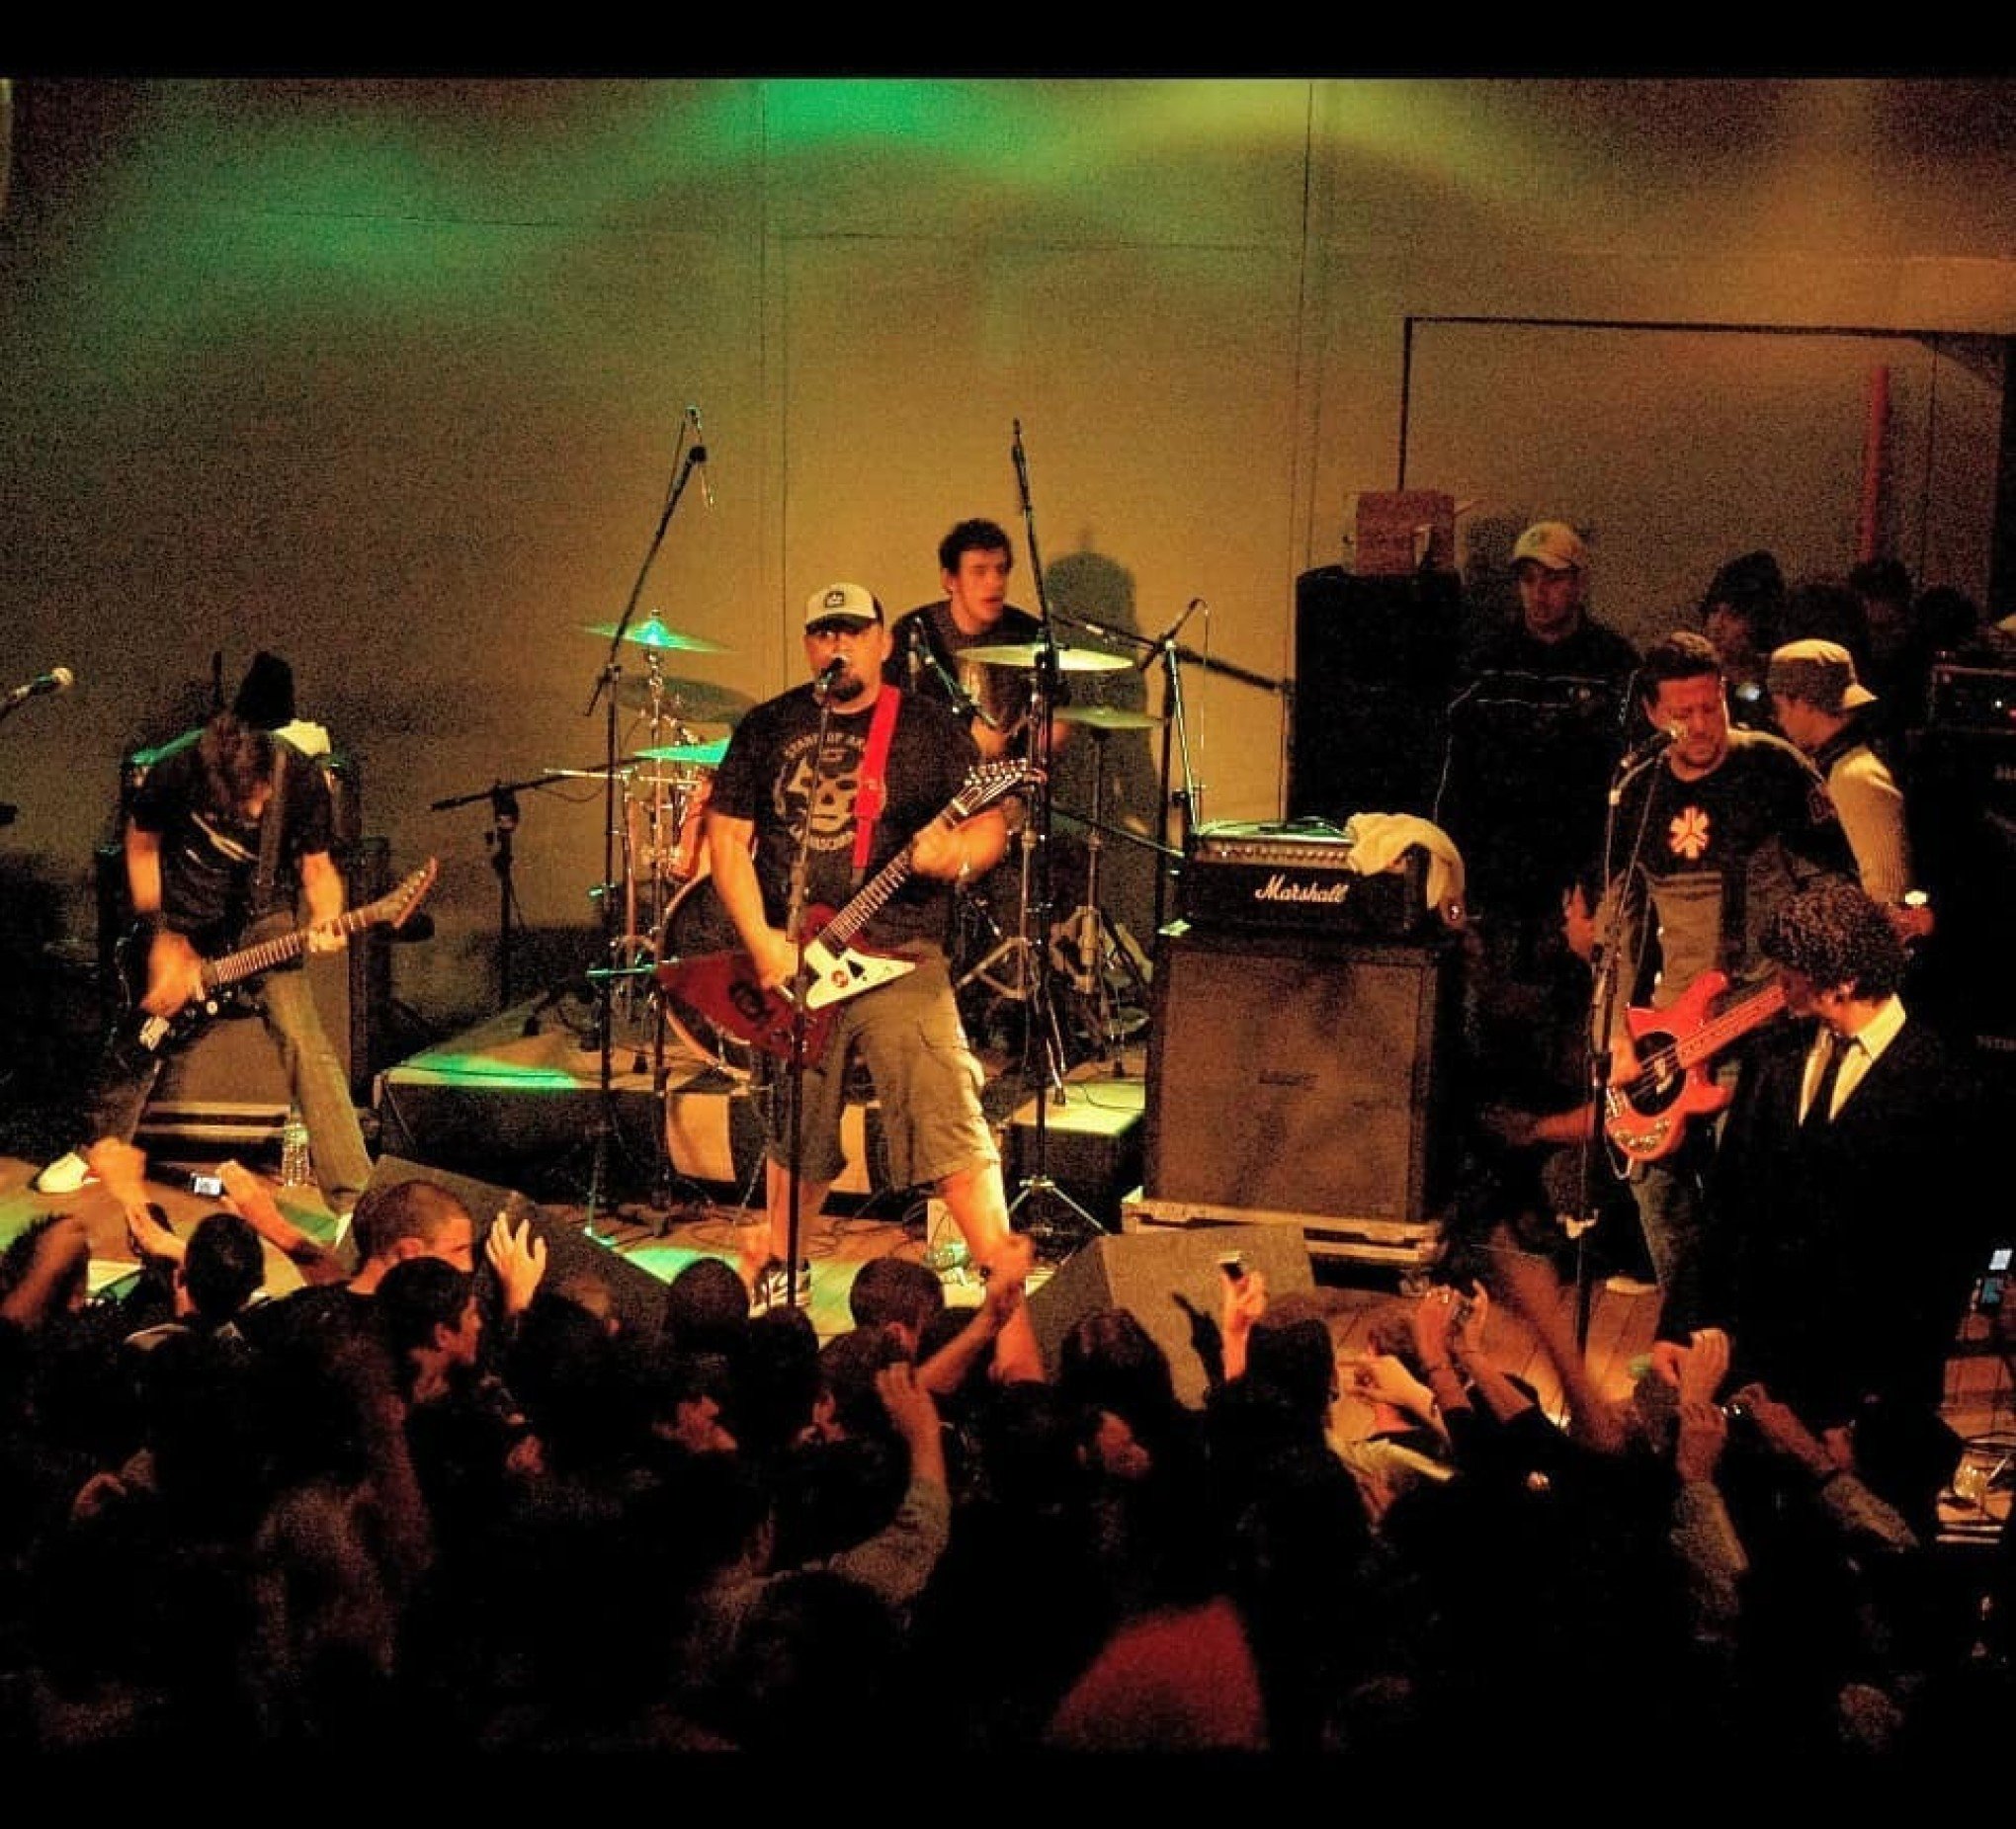 Raimundos agitaram a cena rock de Canoas há 13 anos